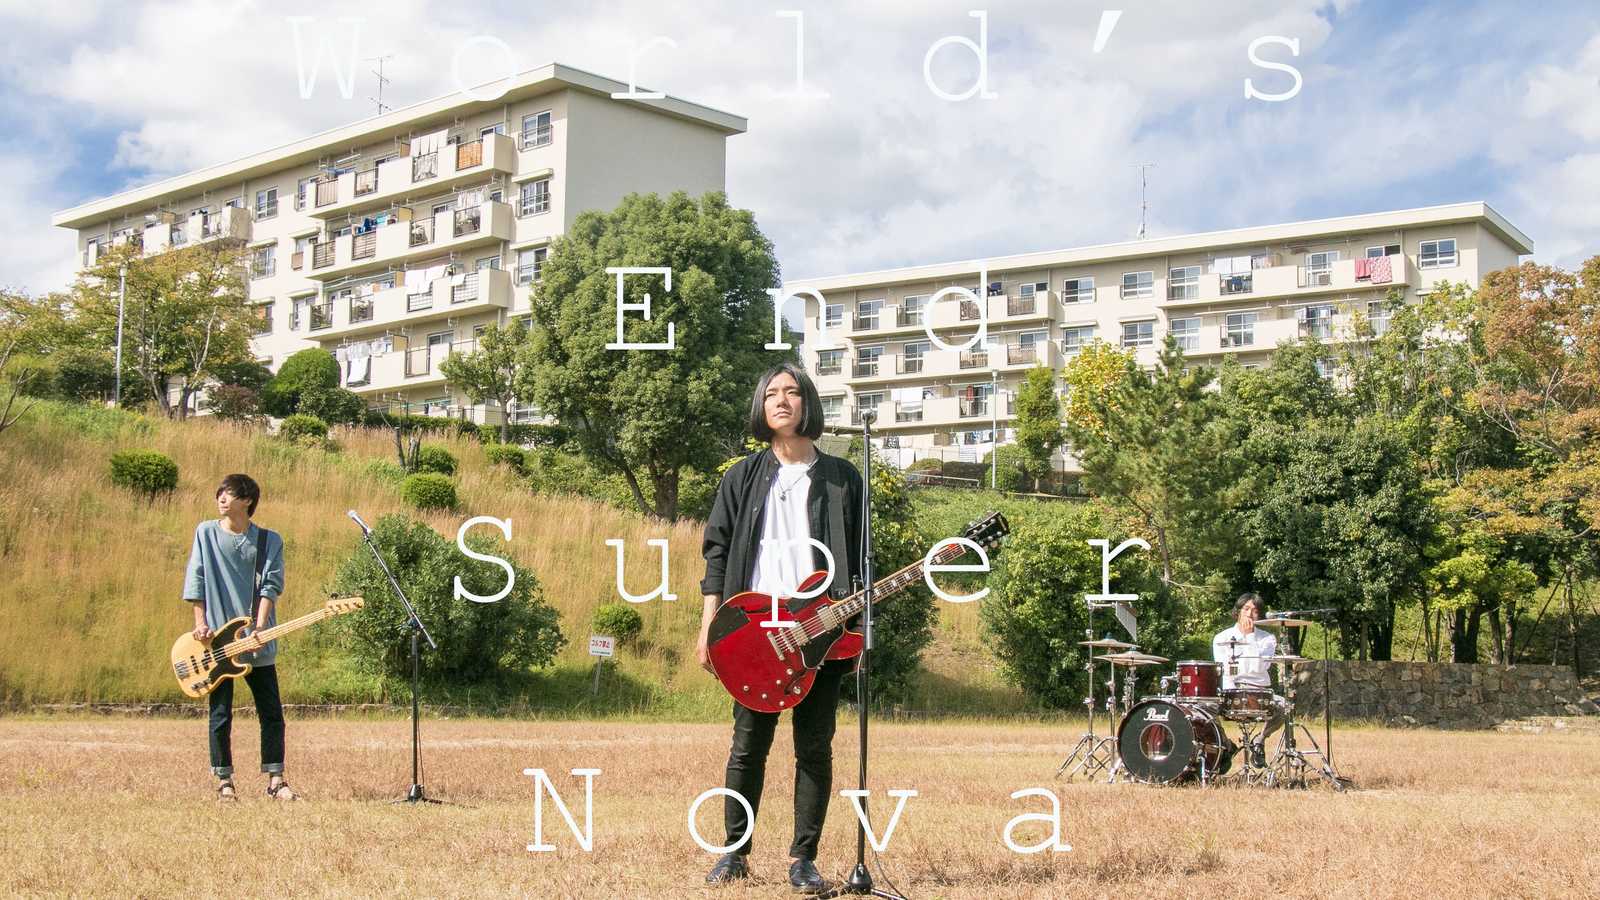 Neues Mini-Album von World's End Super Nova © World's End Super Nova. All rights reserved.